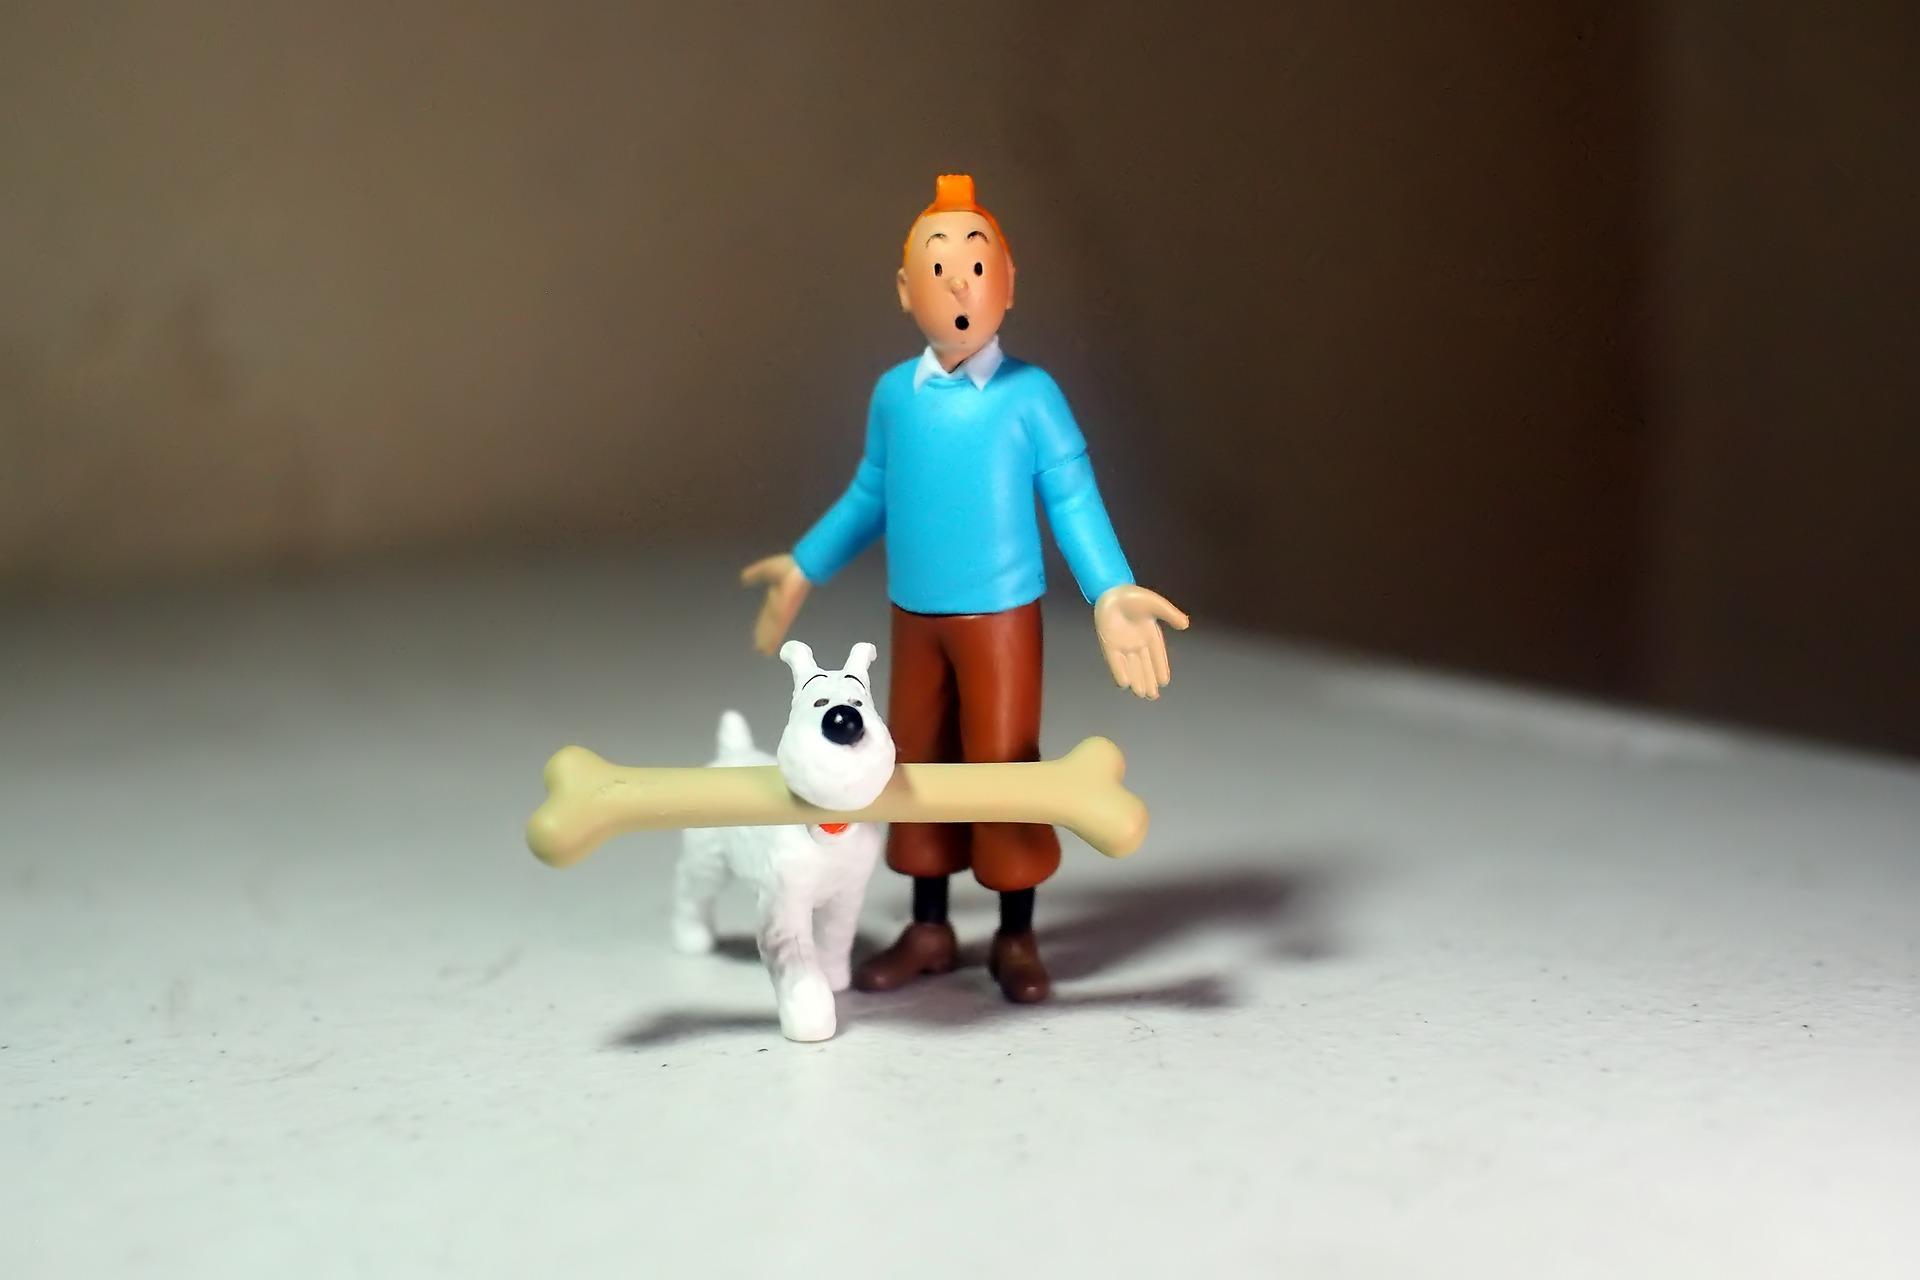 Tintin, l'aventure immersive à l'Atelier des Lumières